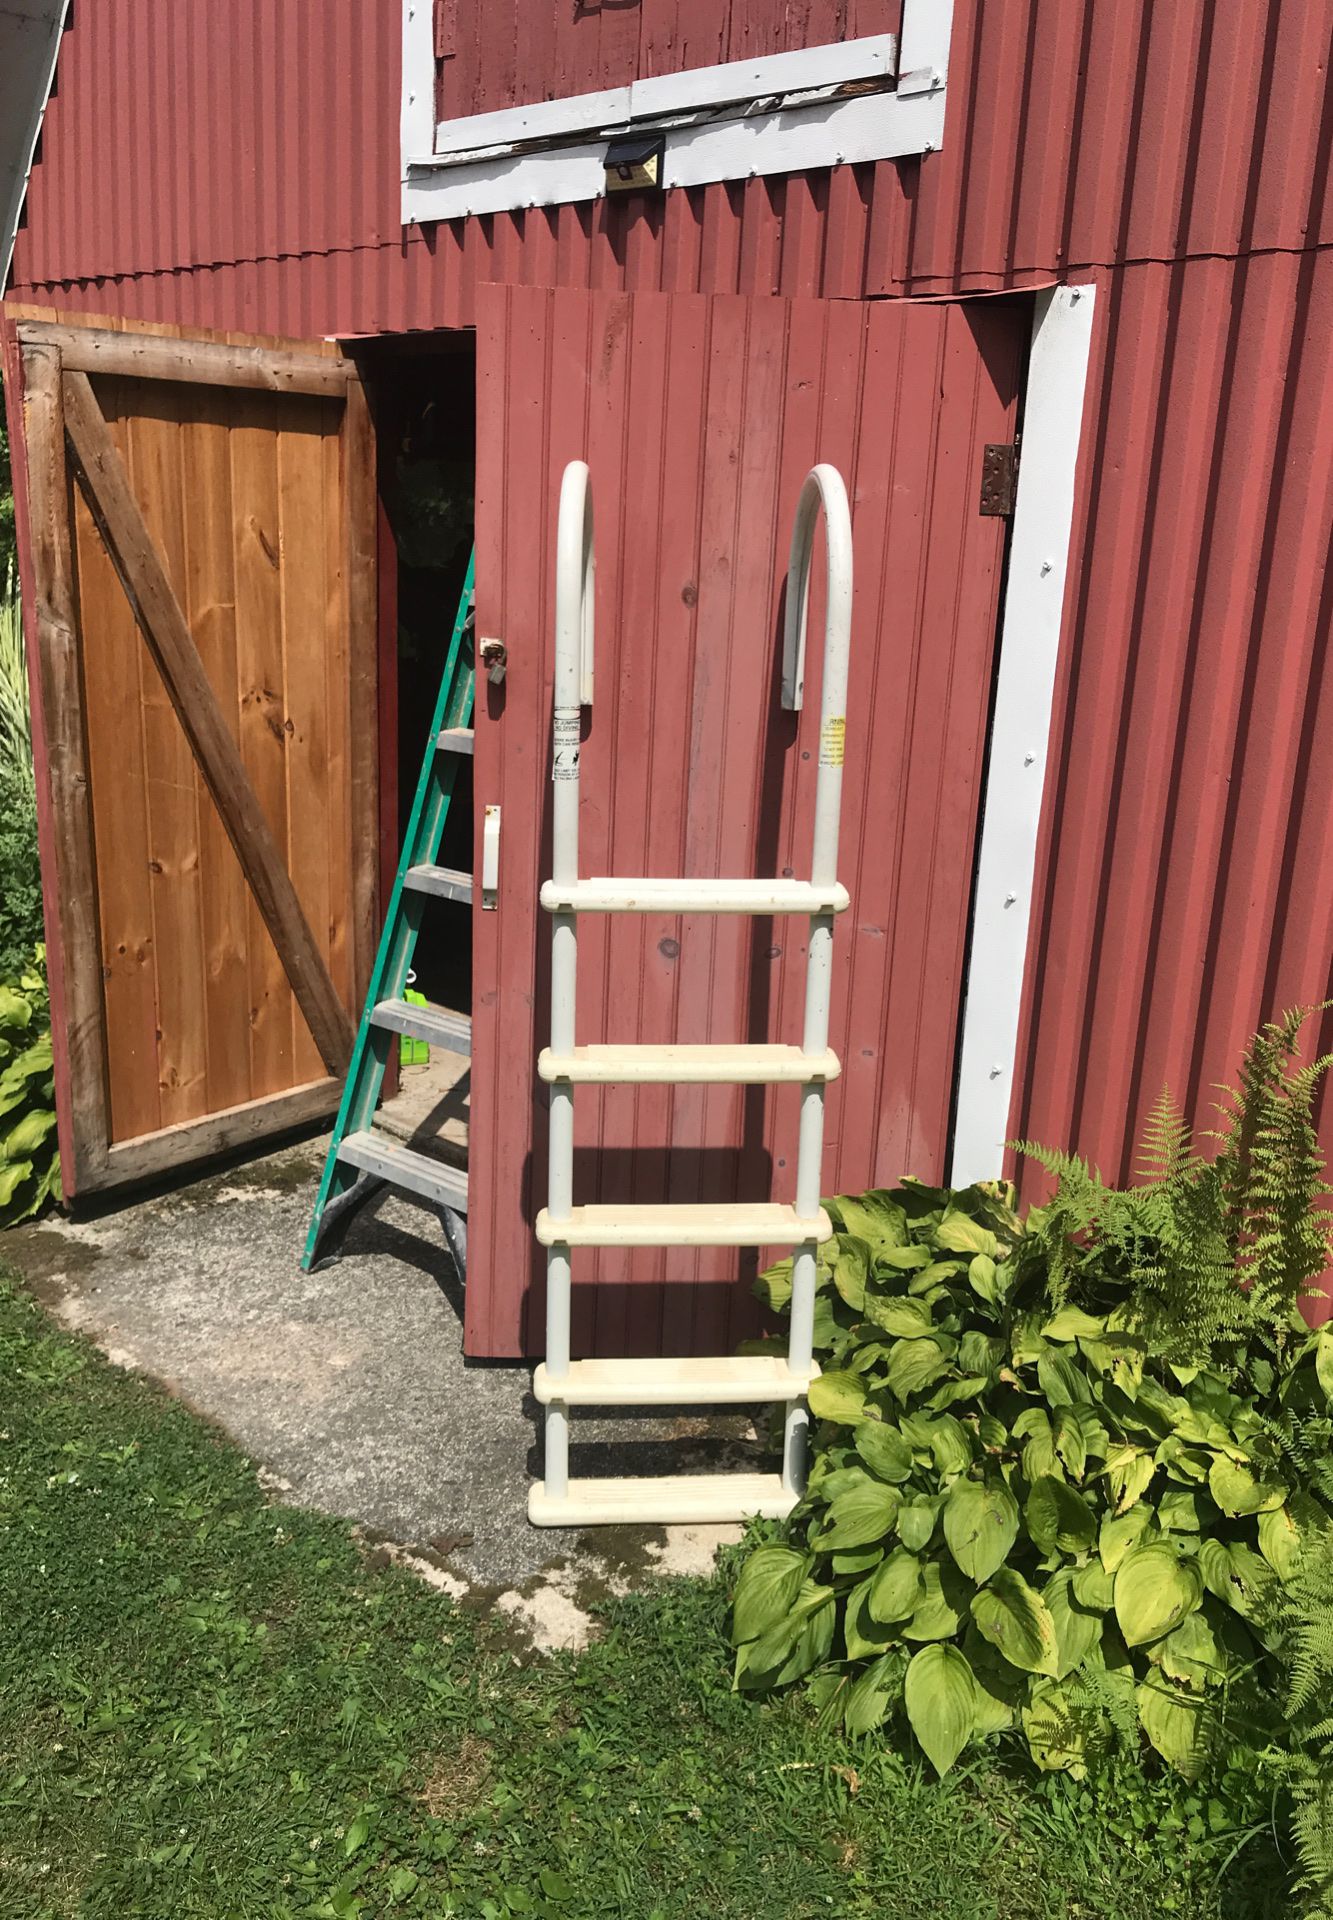 Metal pool ladder